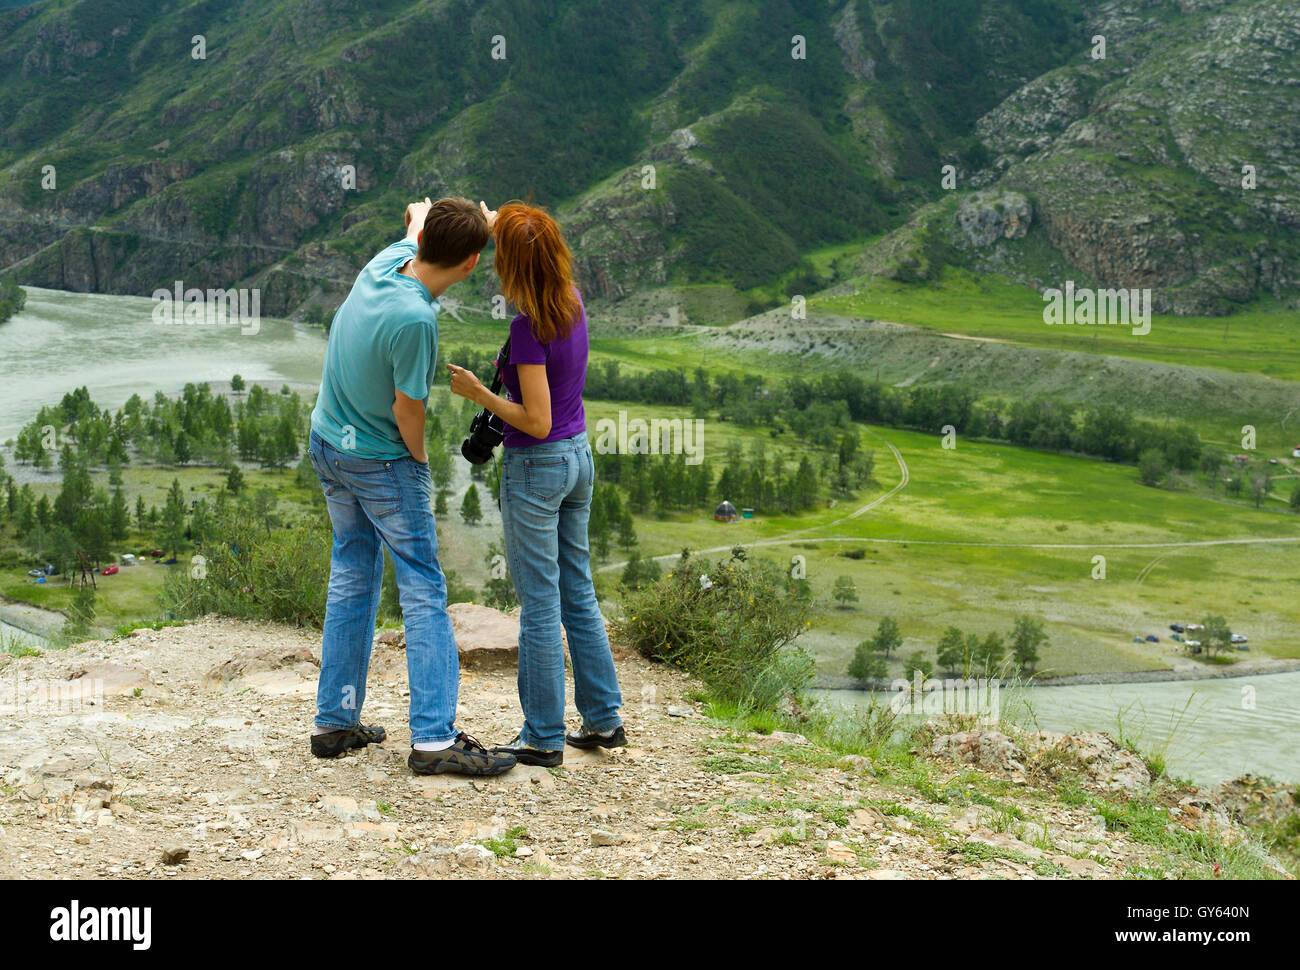 Junges Paar (kaukasischer Mann und Frau) unter der Natur Blick auf die schöne Landschaft mit Bergen, die etwas zeigen Stockfoto